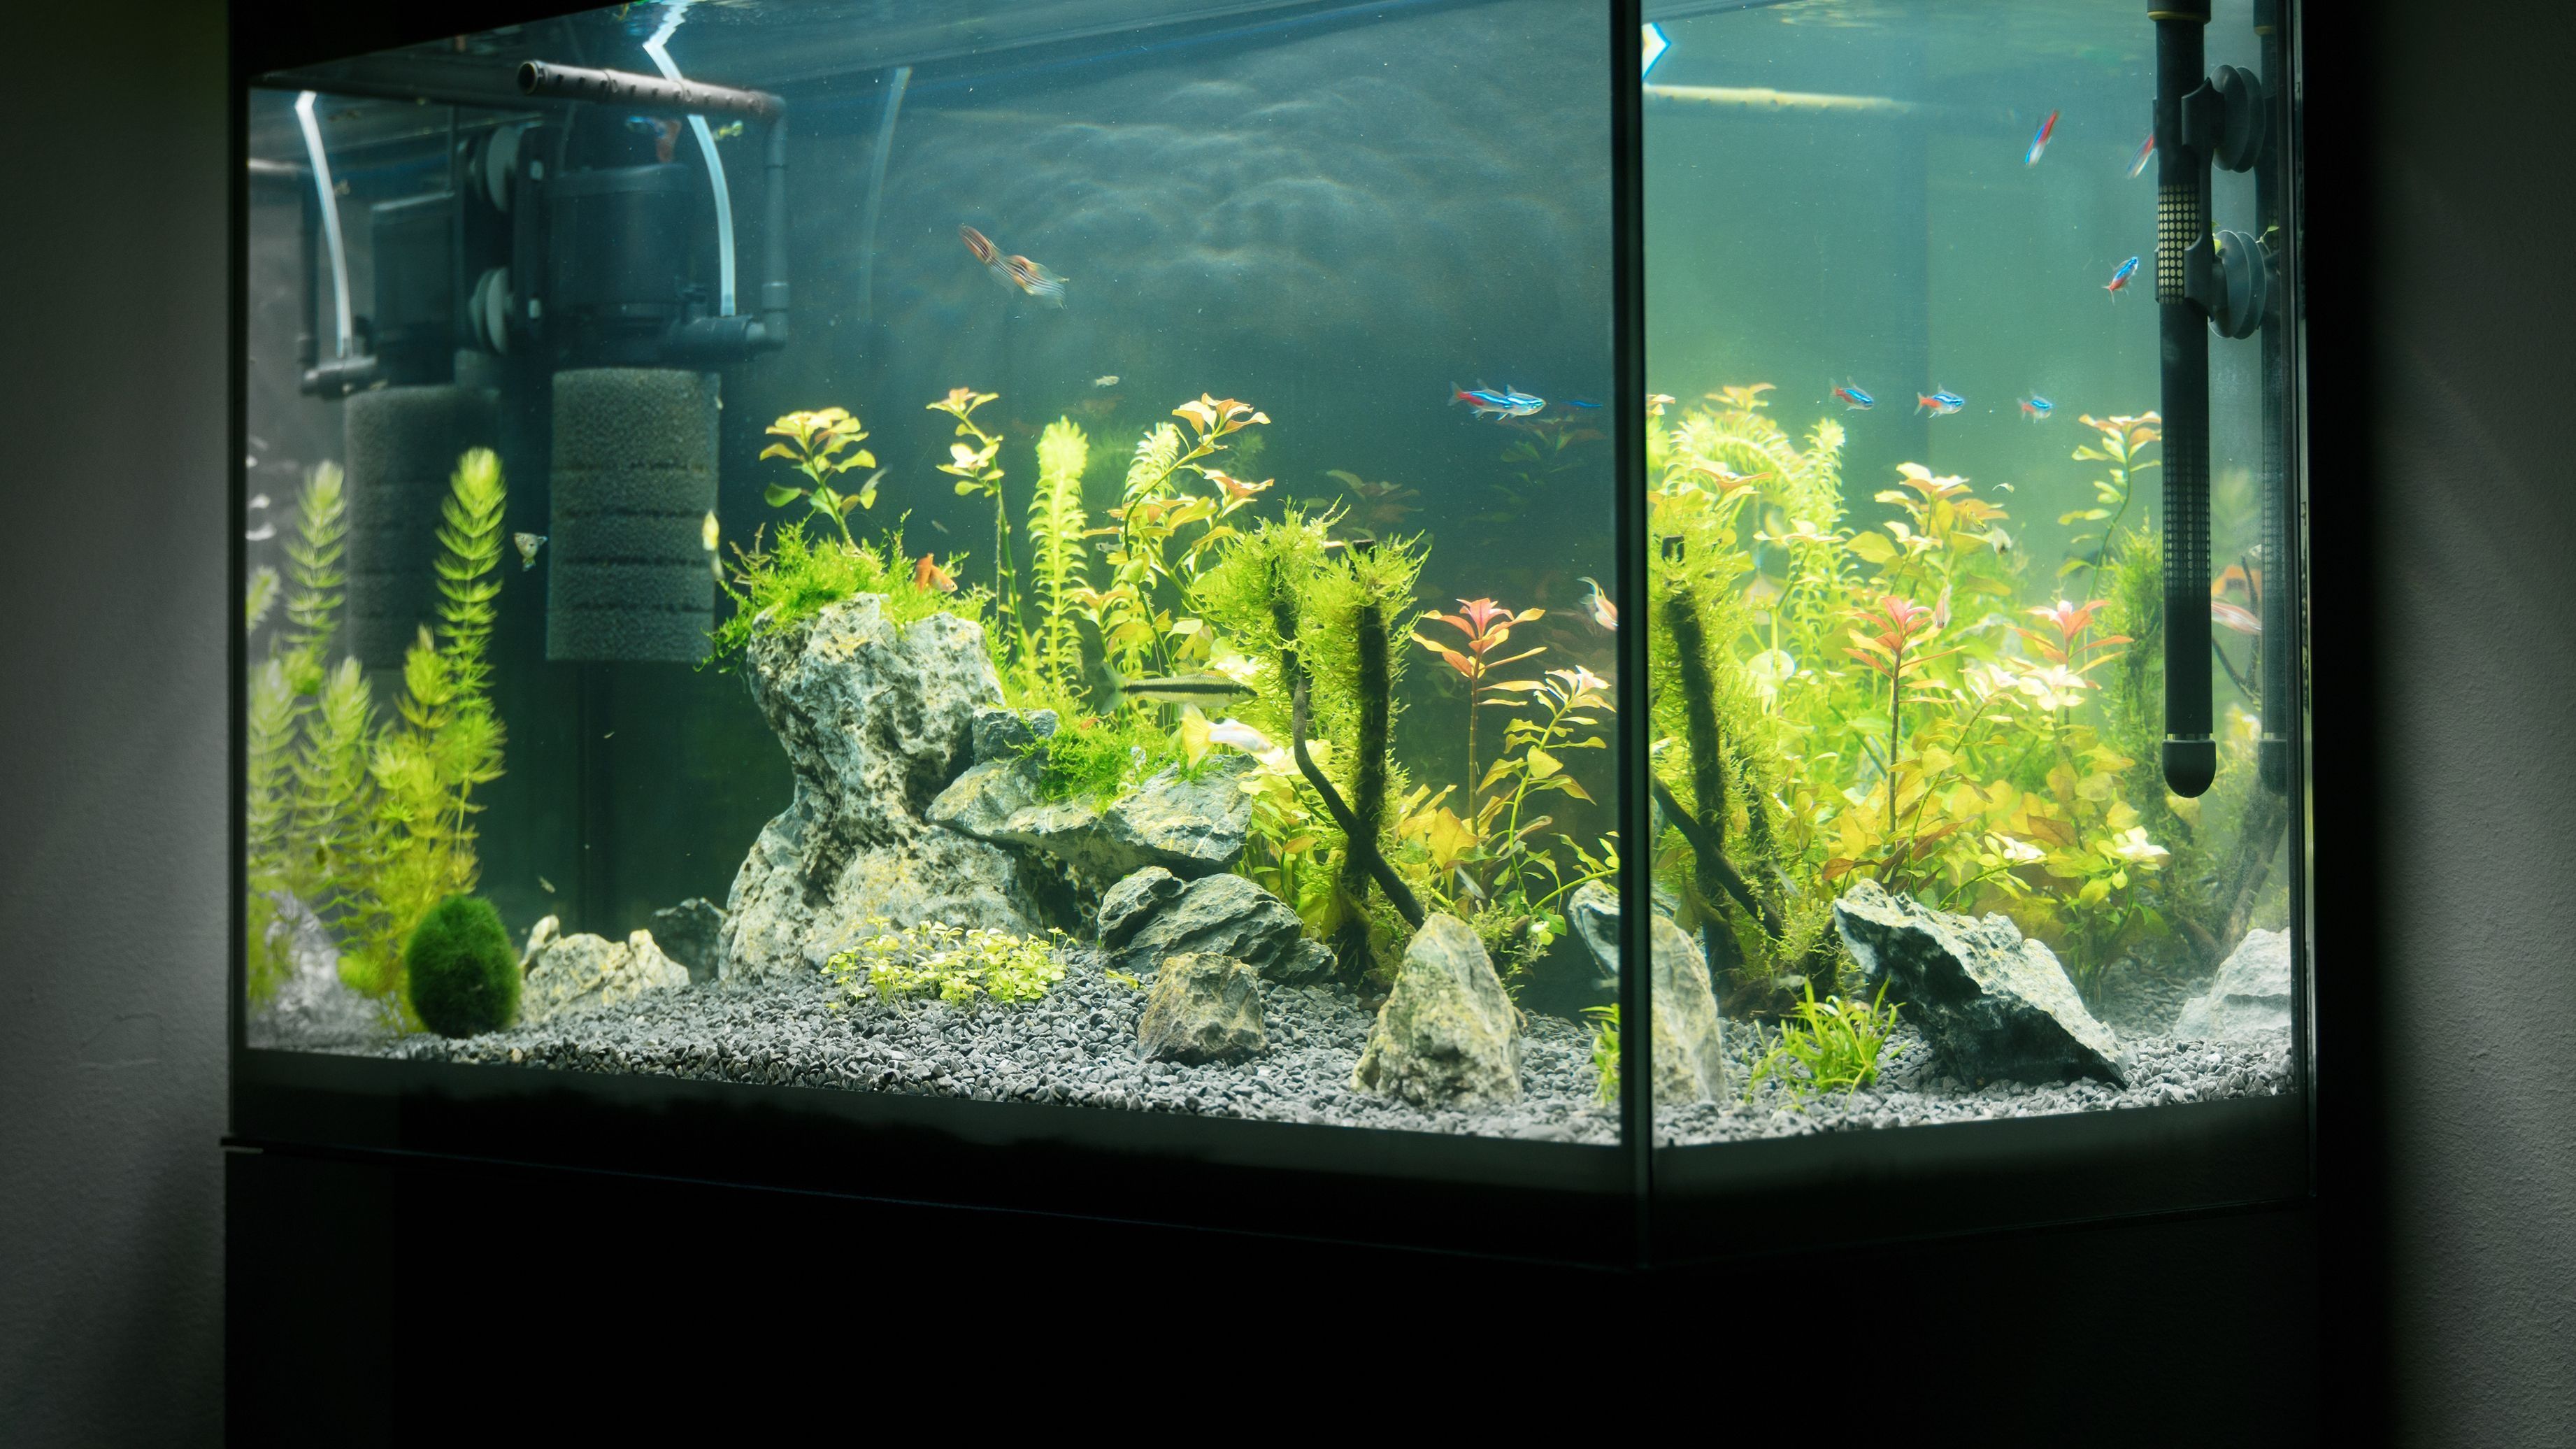 Filtre Externe 1400 l/h Avec UV 9W Pour Aquariums - Le Poisson Qui